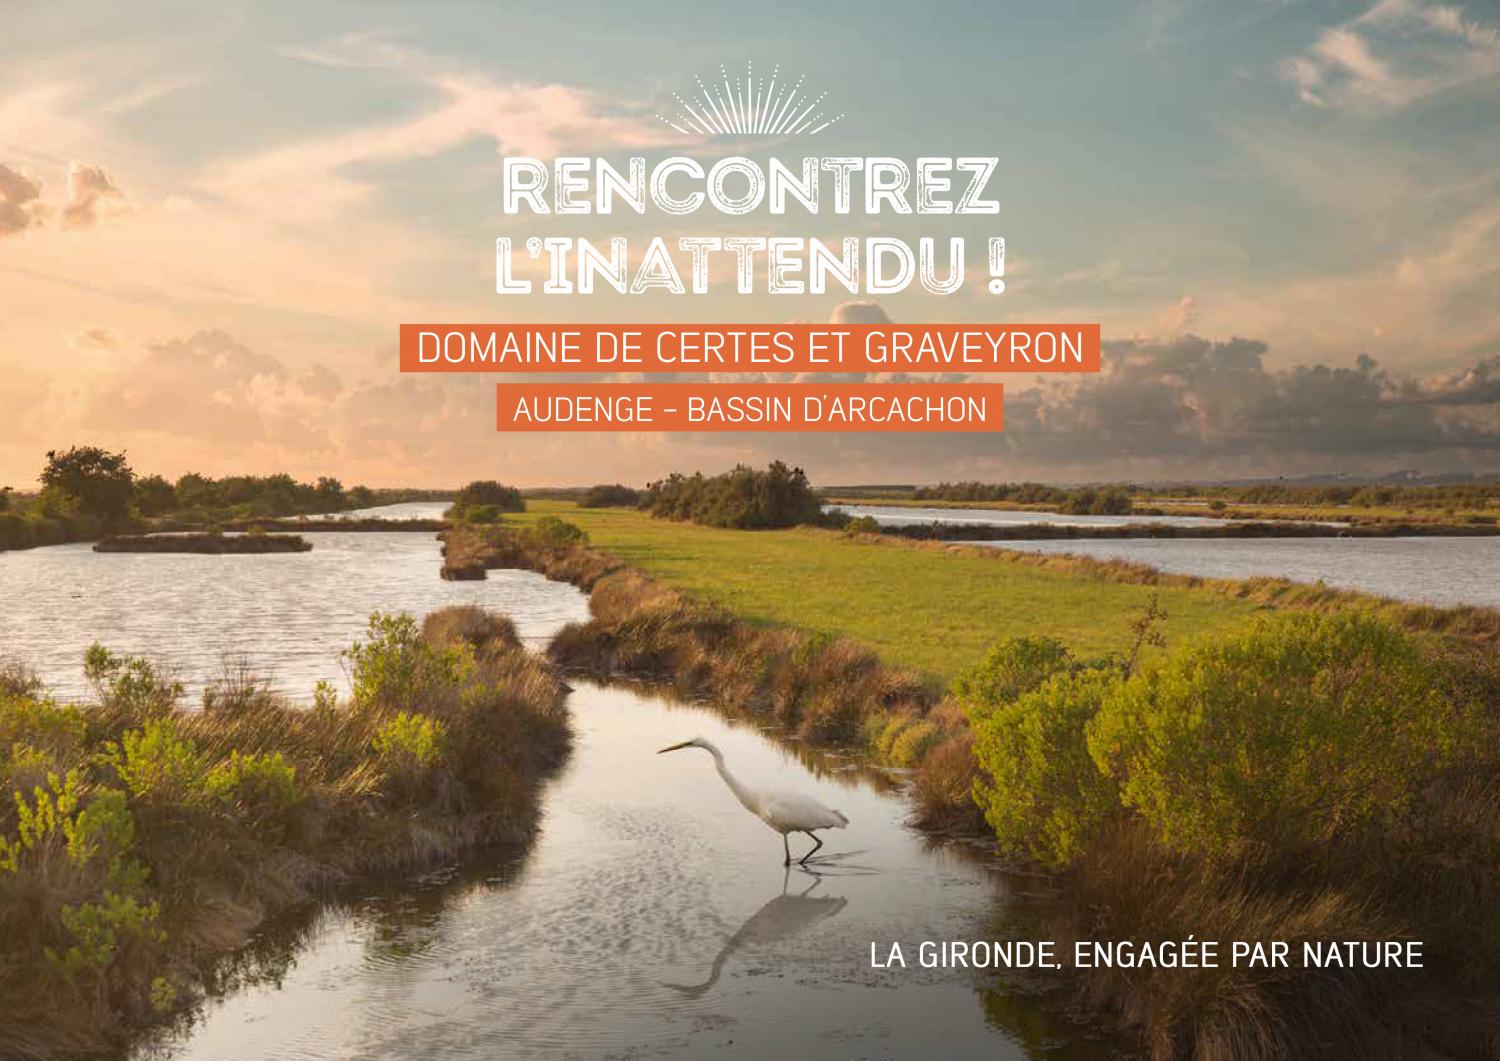 Semaine inaugurale du Domaine de Certes (Bassin d'Arcachon) du 7 au 15 octobre